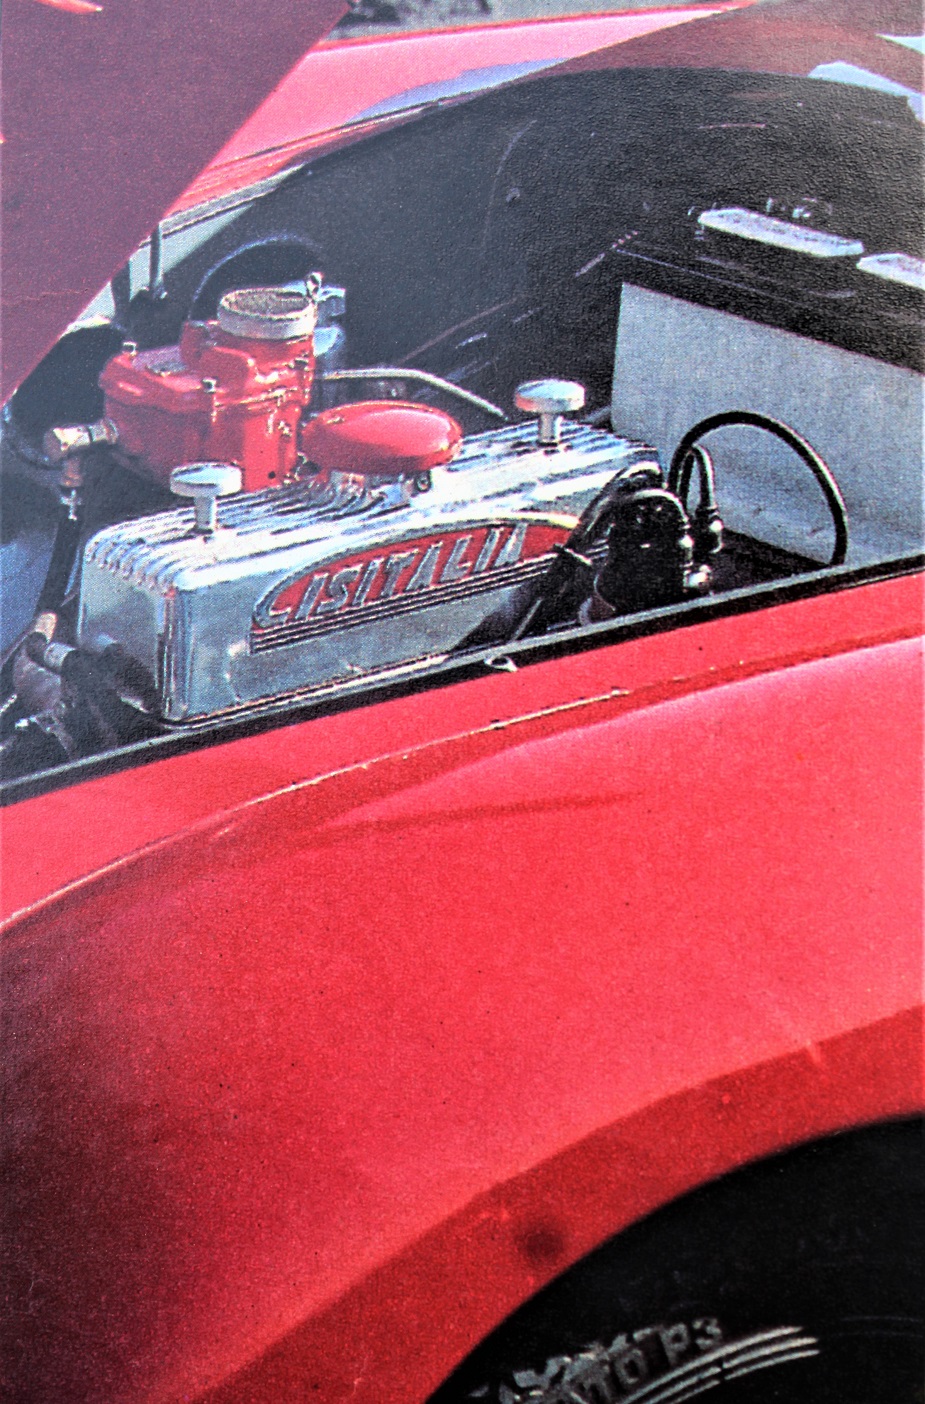 Cisitalia Aerodinamica Savonuzzi Il motore di origine Fiat profondamente modificato.